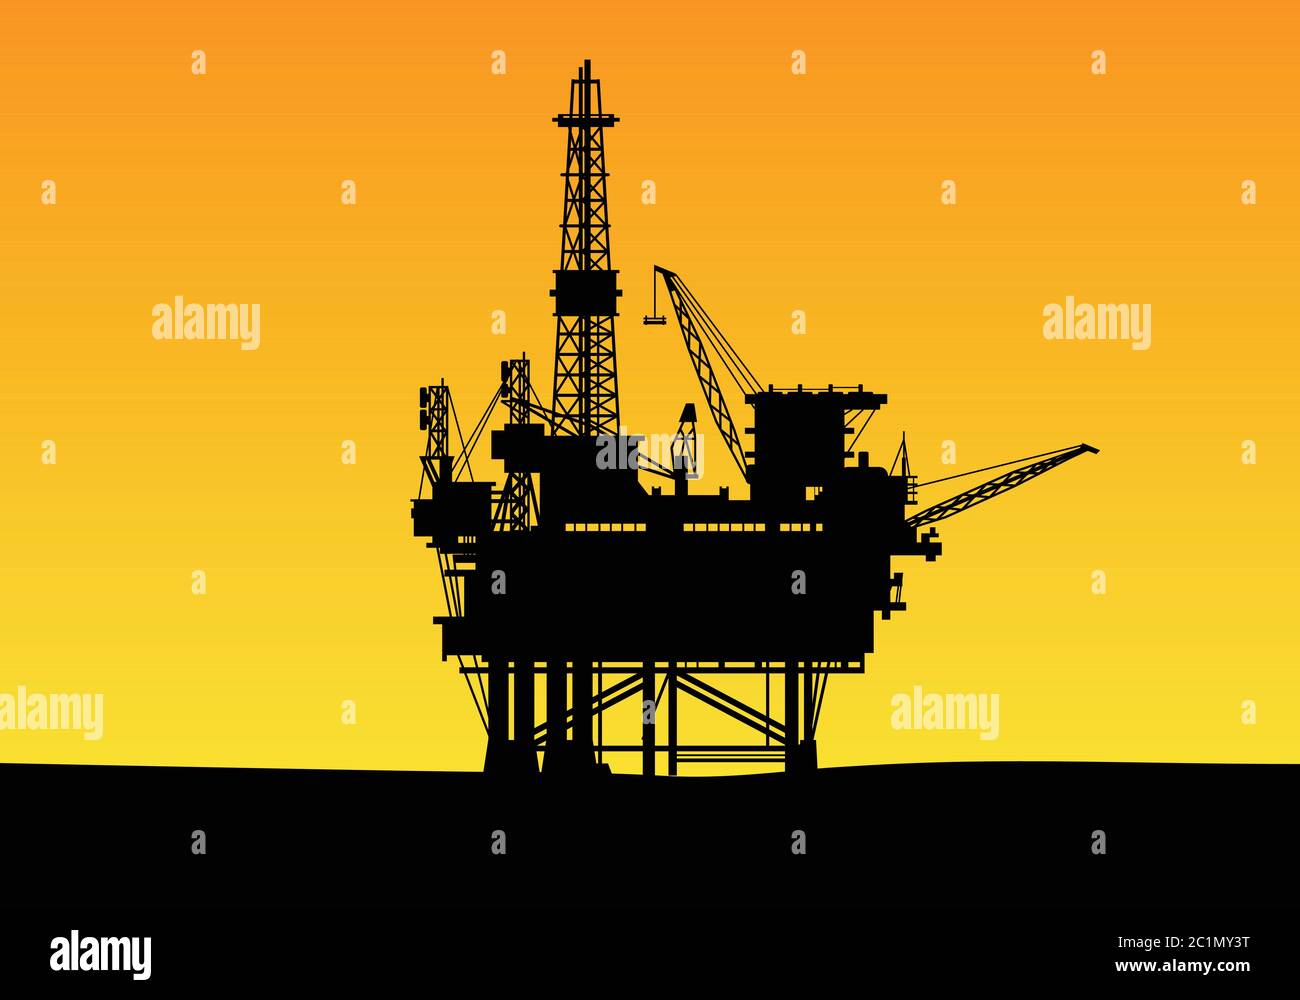 silhouette di una costruzione offshore di perforazione petrolifera con torri alte e gru. Adatto per modelli di progettazione di background per aziende di gas ed energia. Illustrazione Vettoriale